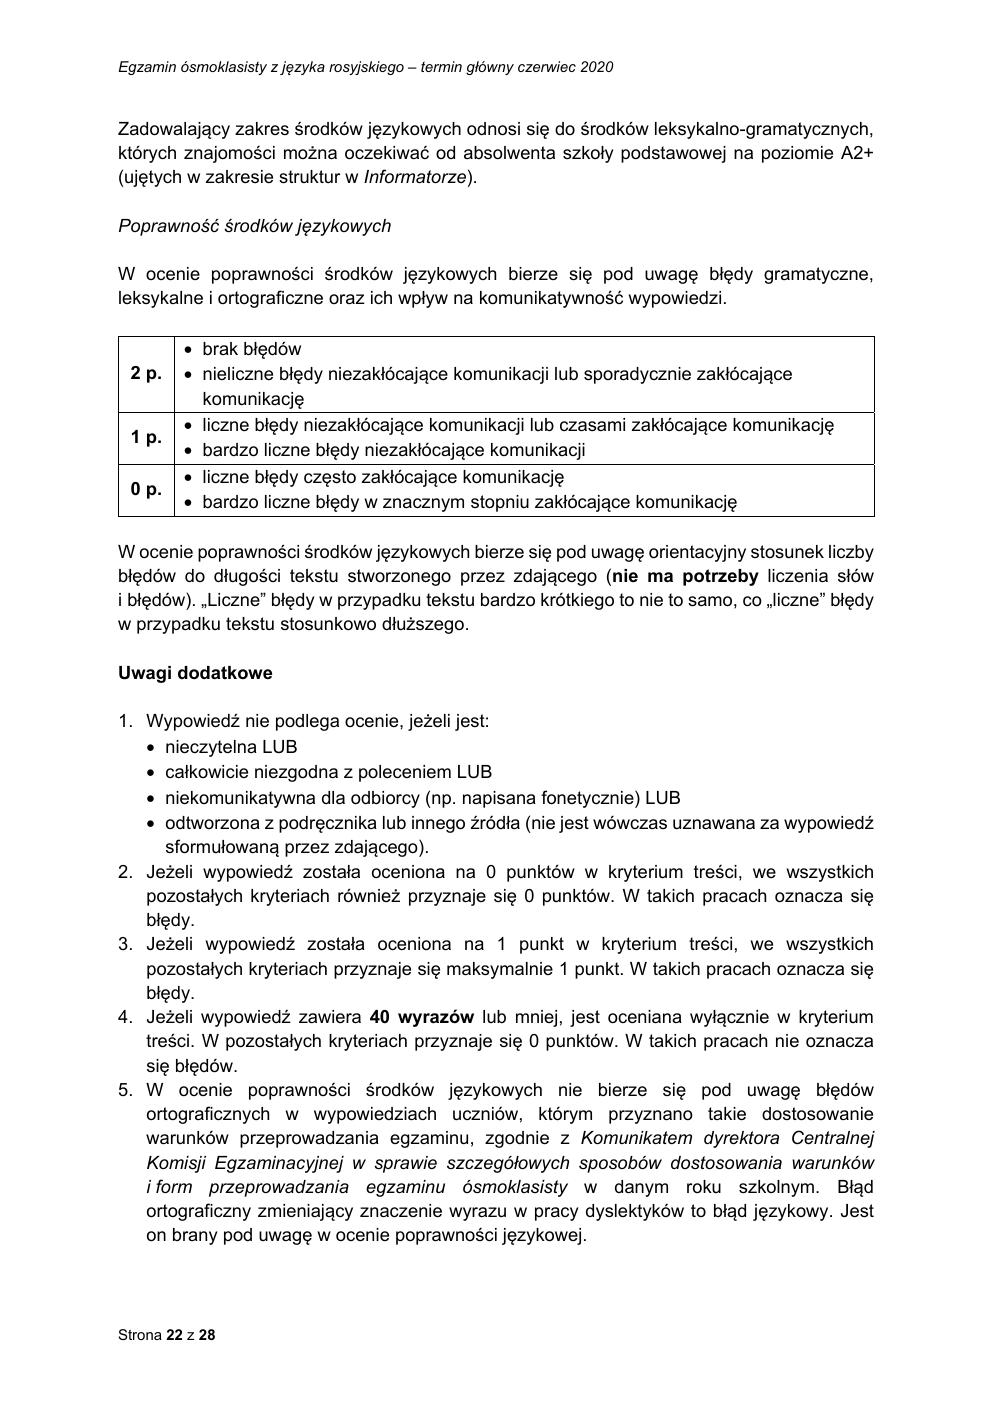 odpowiedzi - rosyjski - egzamin ósmoklasisty 2020-22